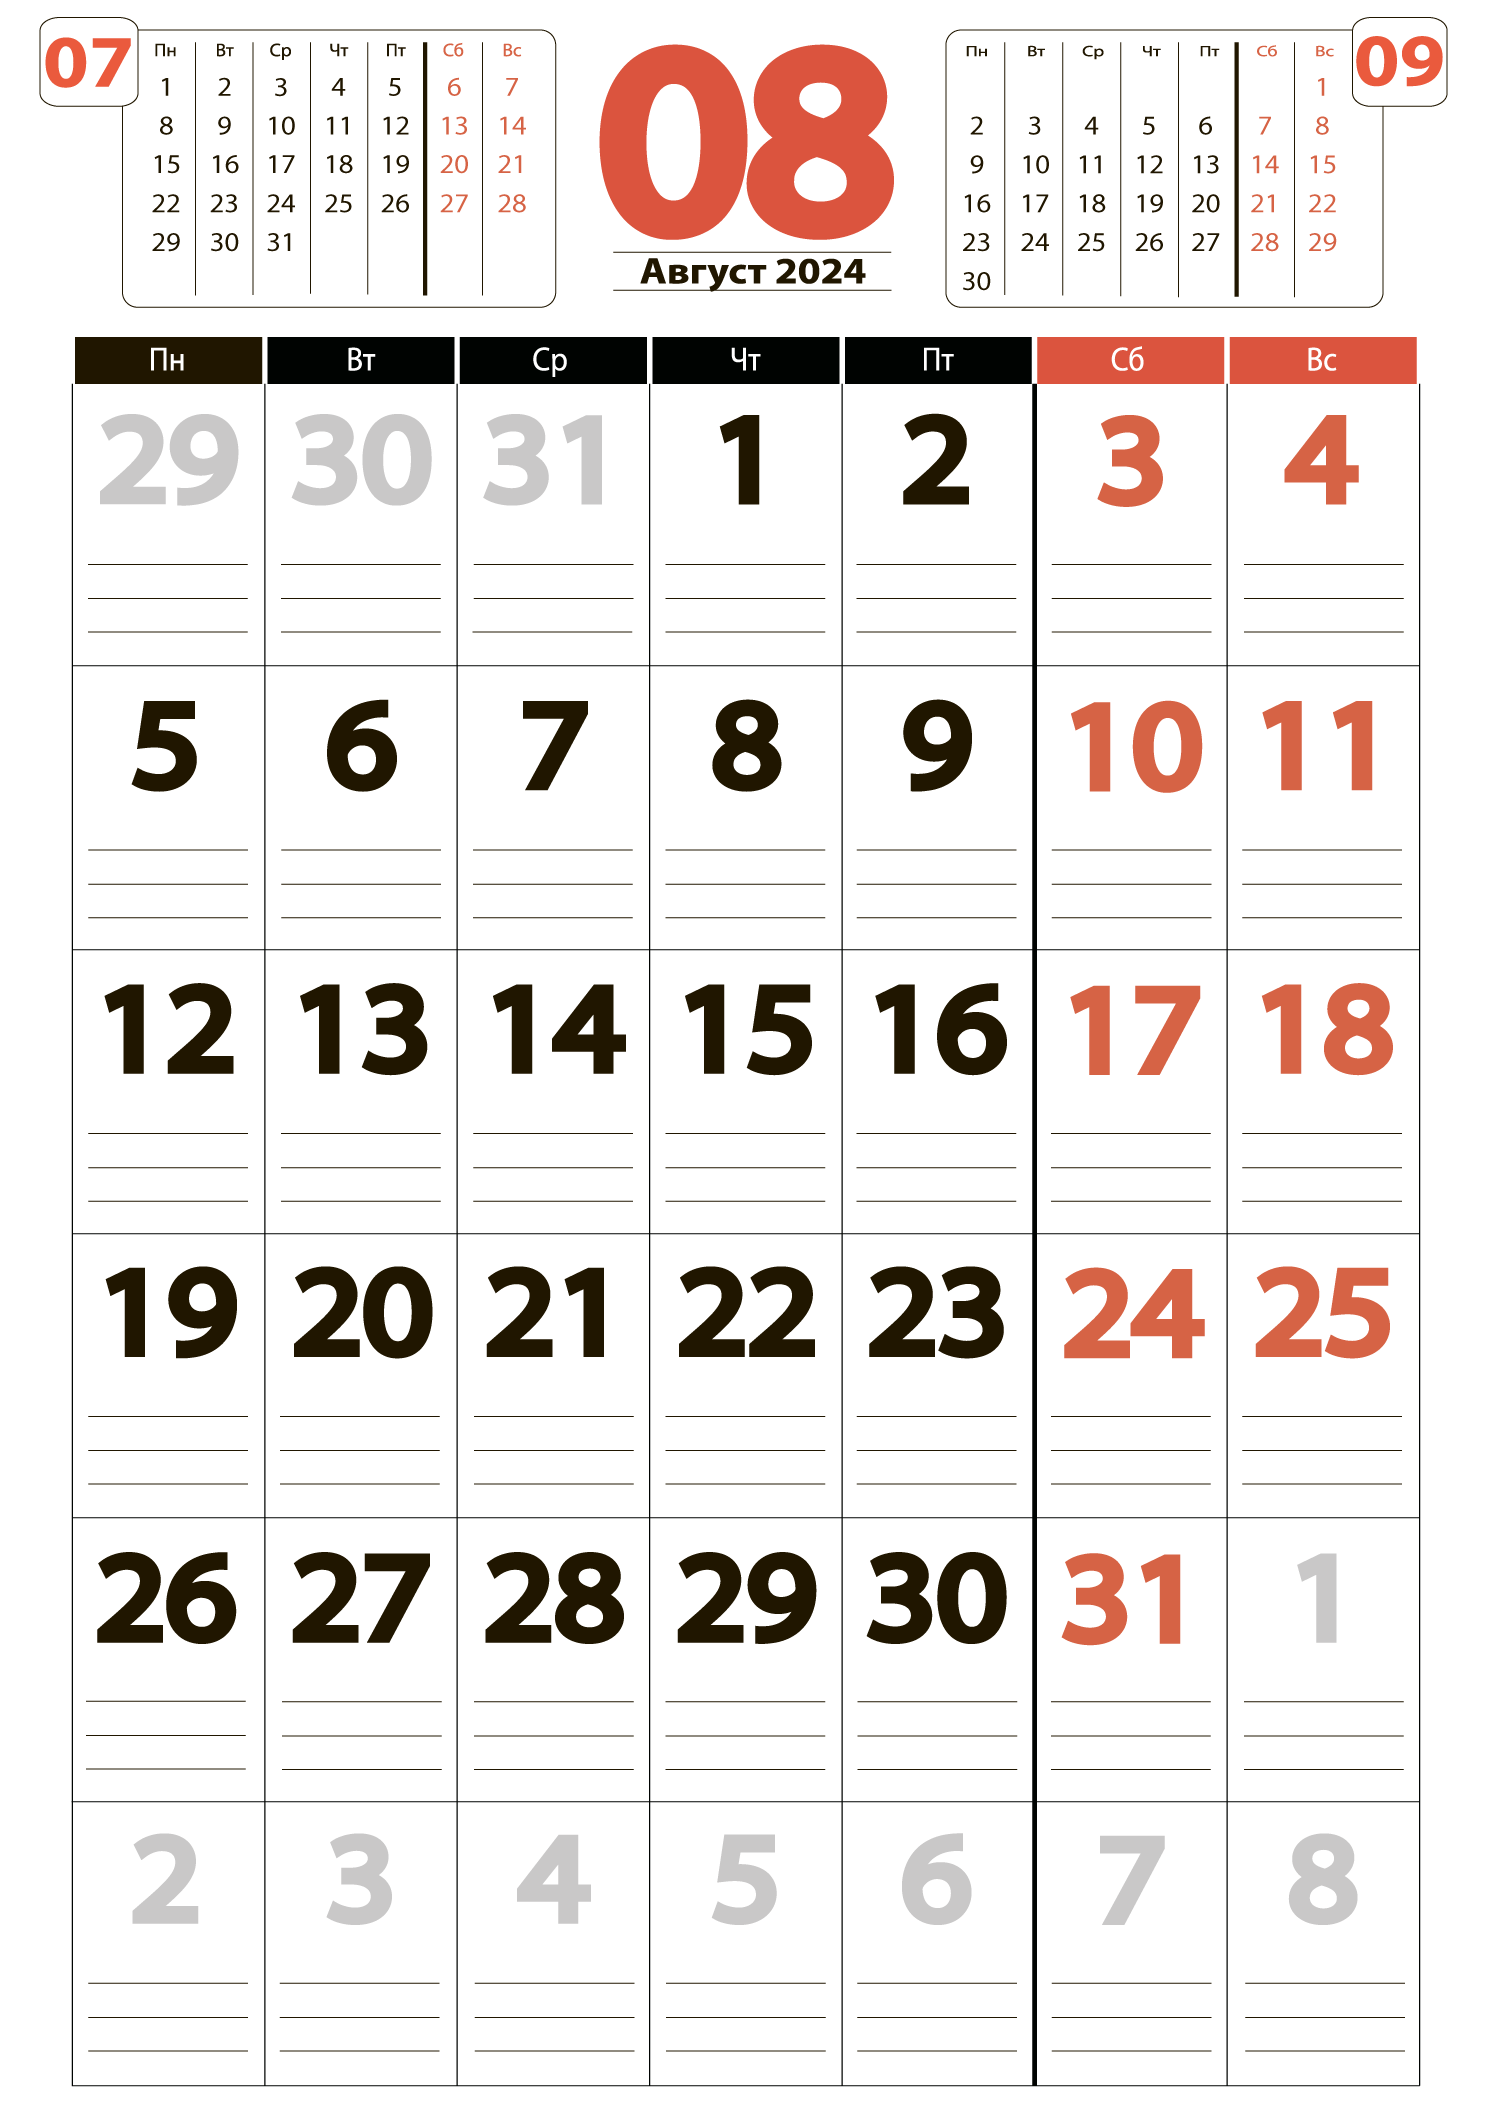 Печать крупного календаря на август 2024